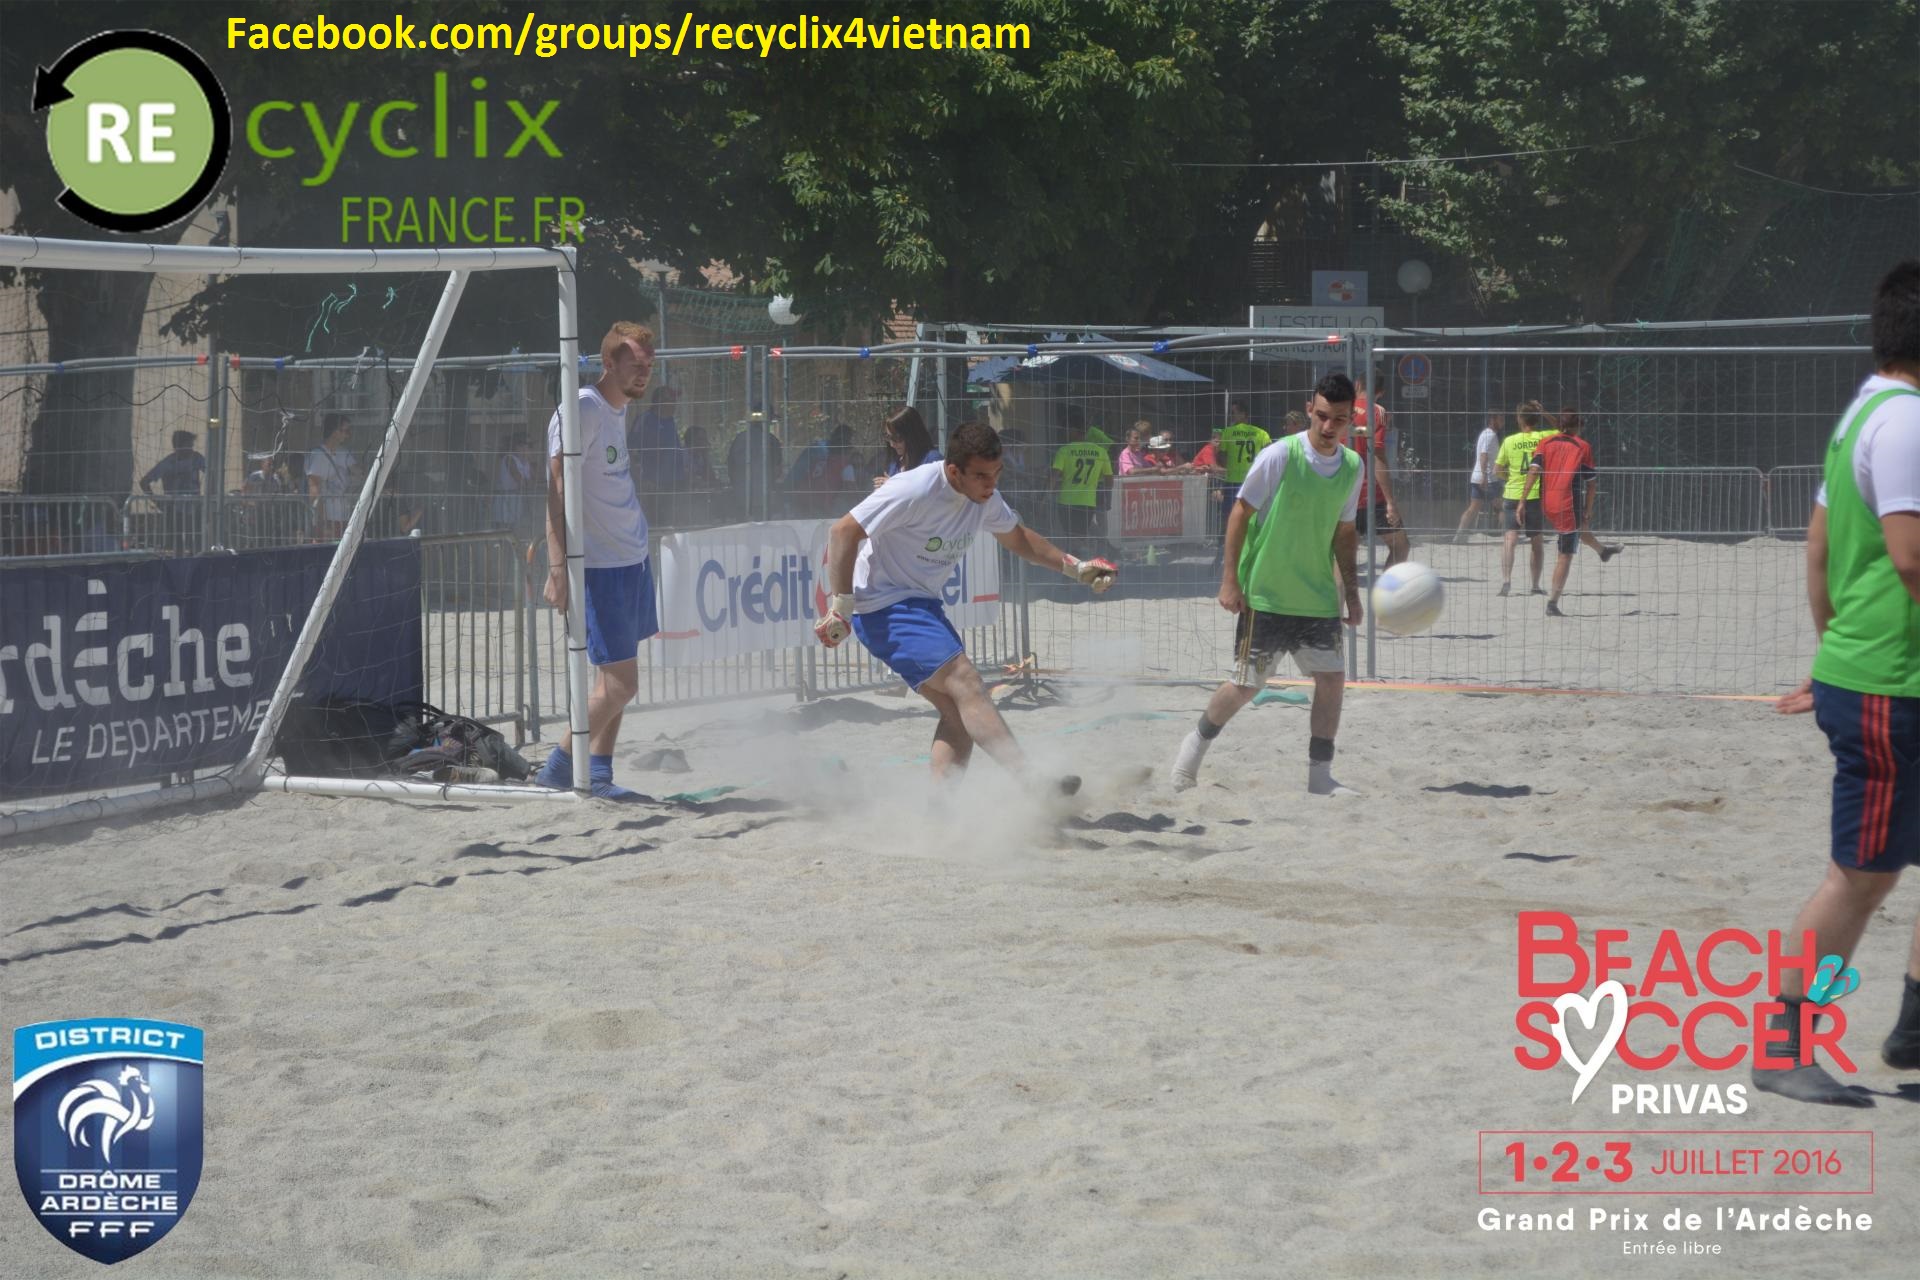 recyclix-beach-soccer-privas-10.jpg